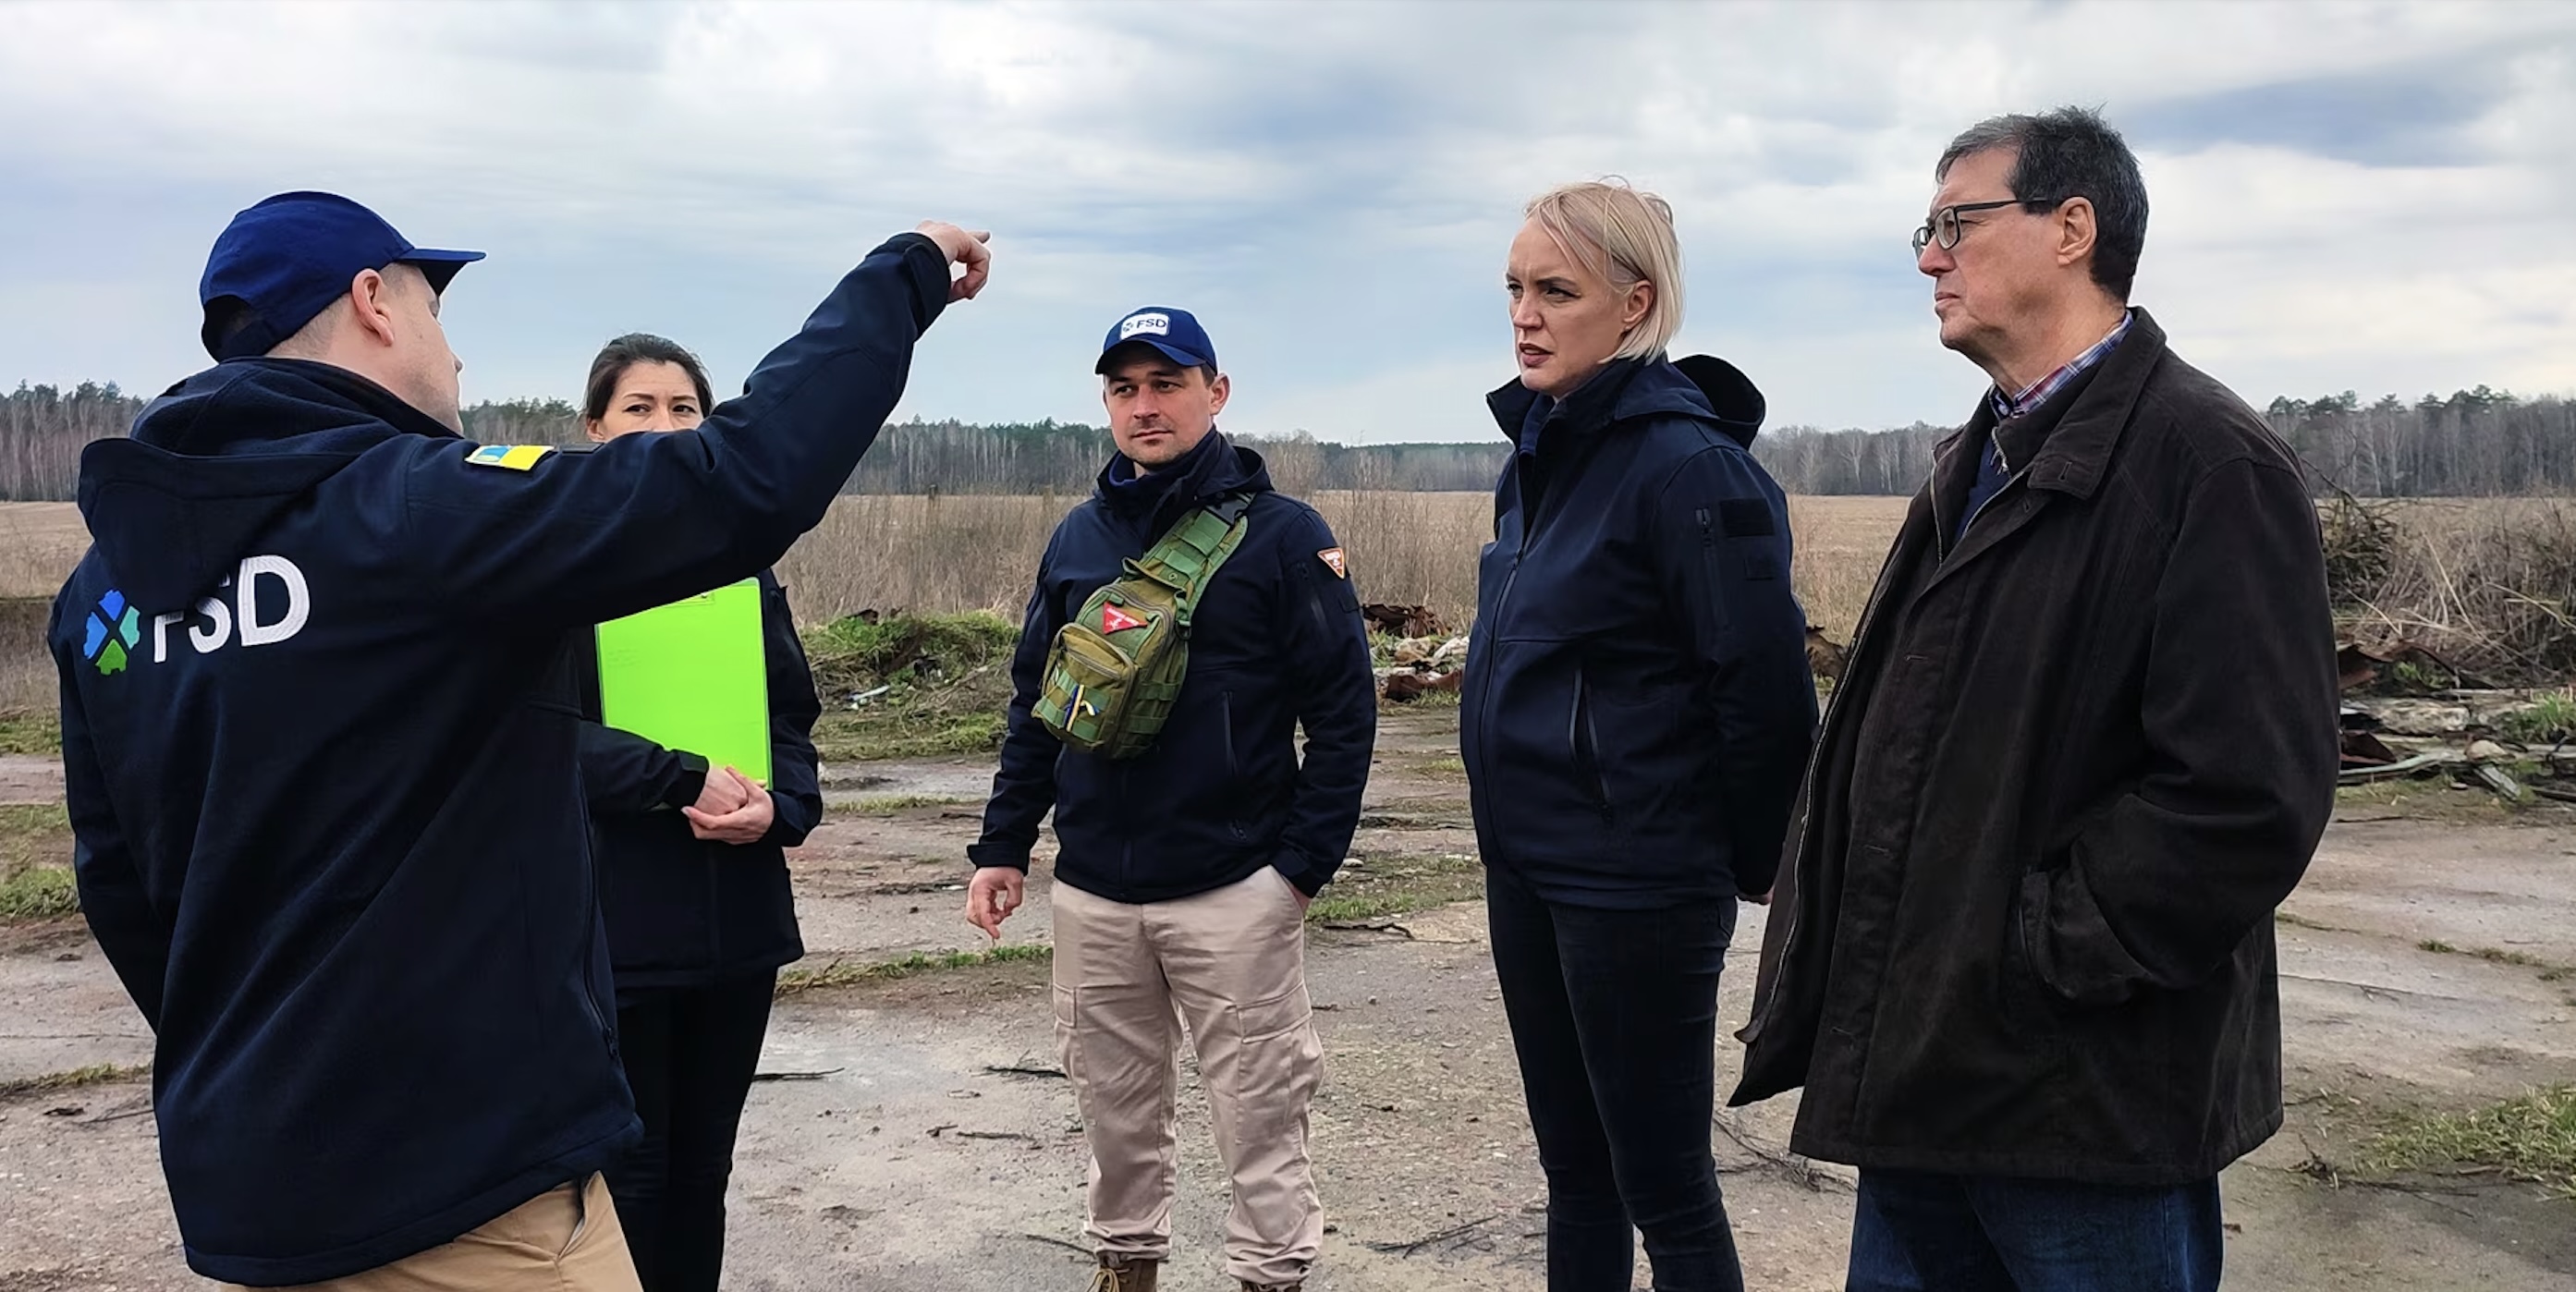 Співробітник FSD пояснює ситуацію в Україні директору Ханс-Йоргe Еберле (праворуч) та його команді